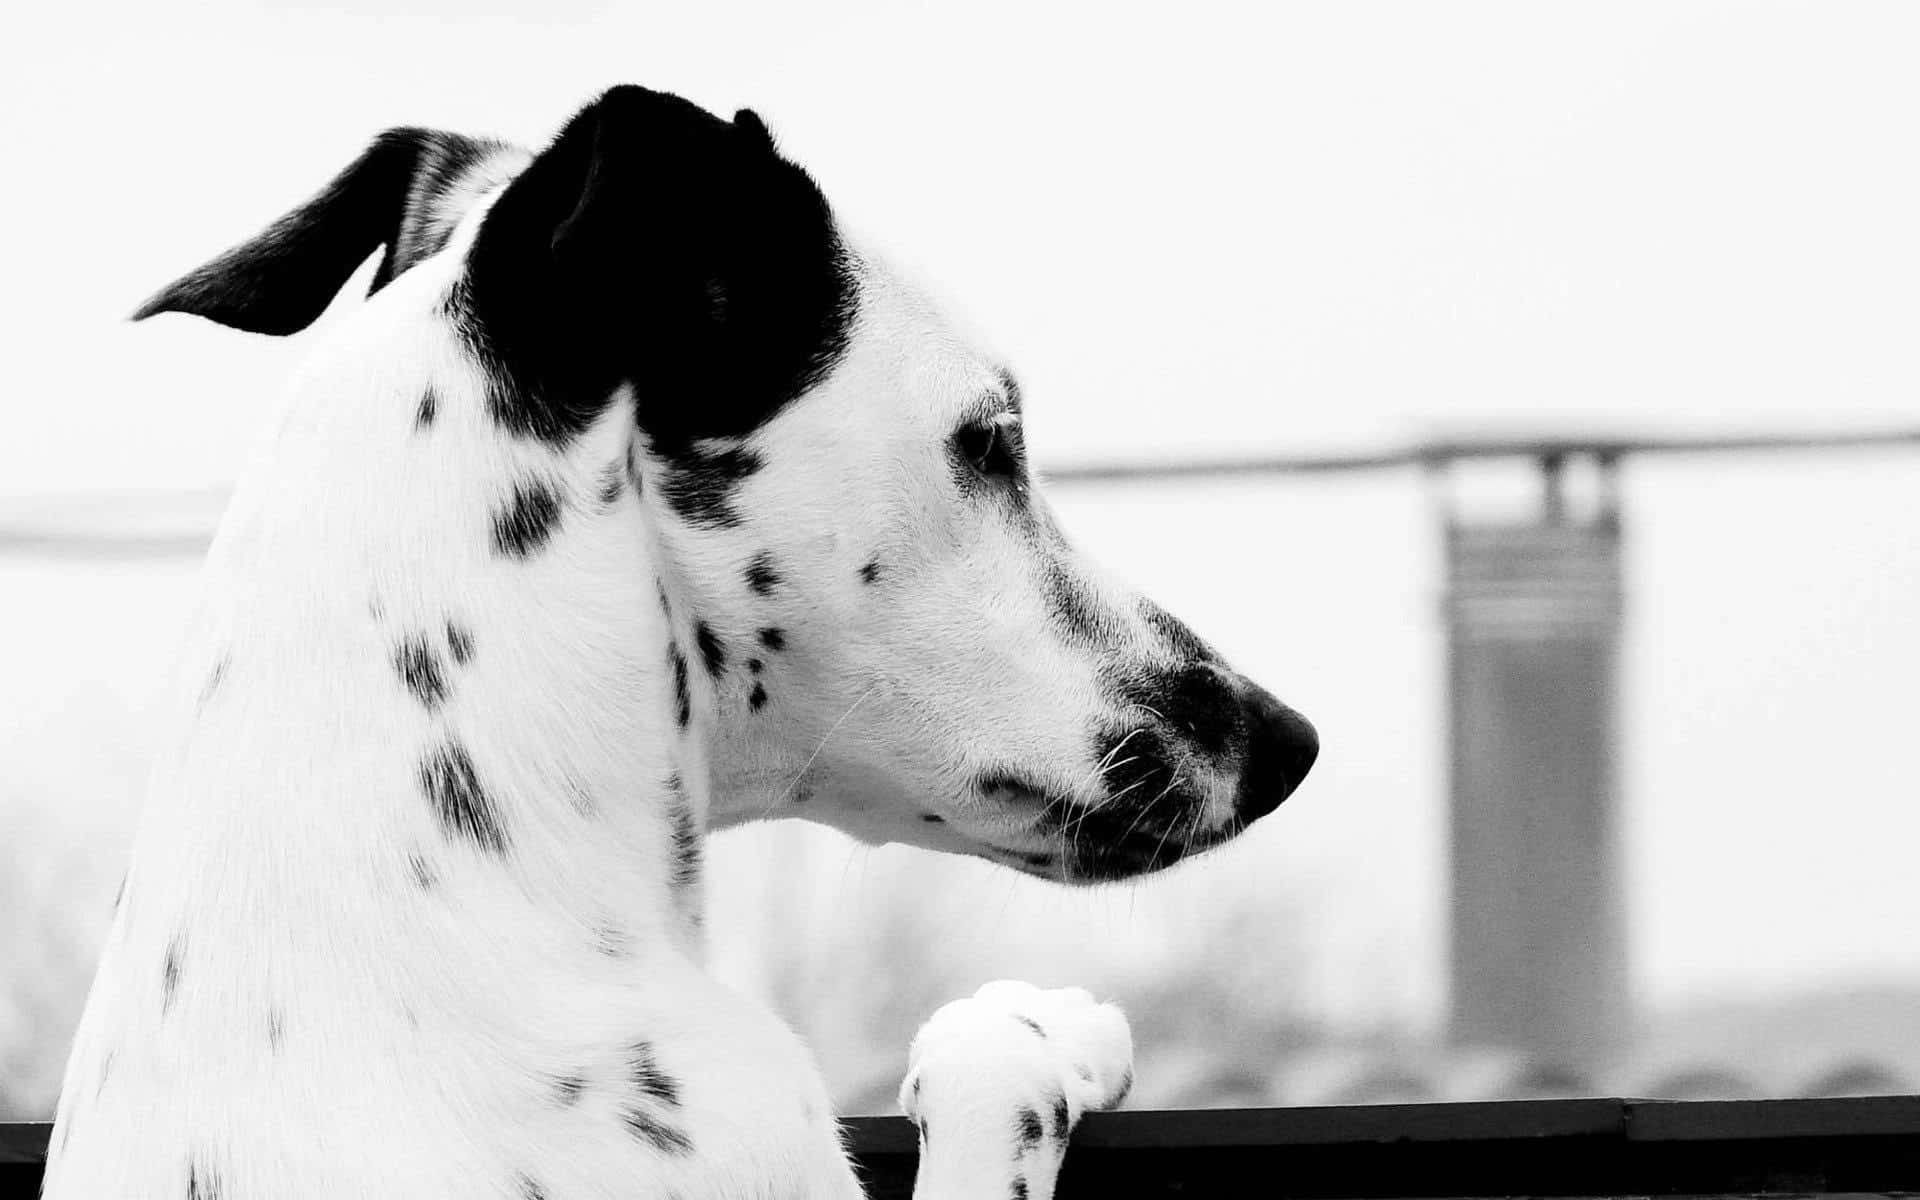 Etnærbillede Af En Dalmatiner Hund Med Sorte, Hvide Og Brune Pletter.